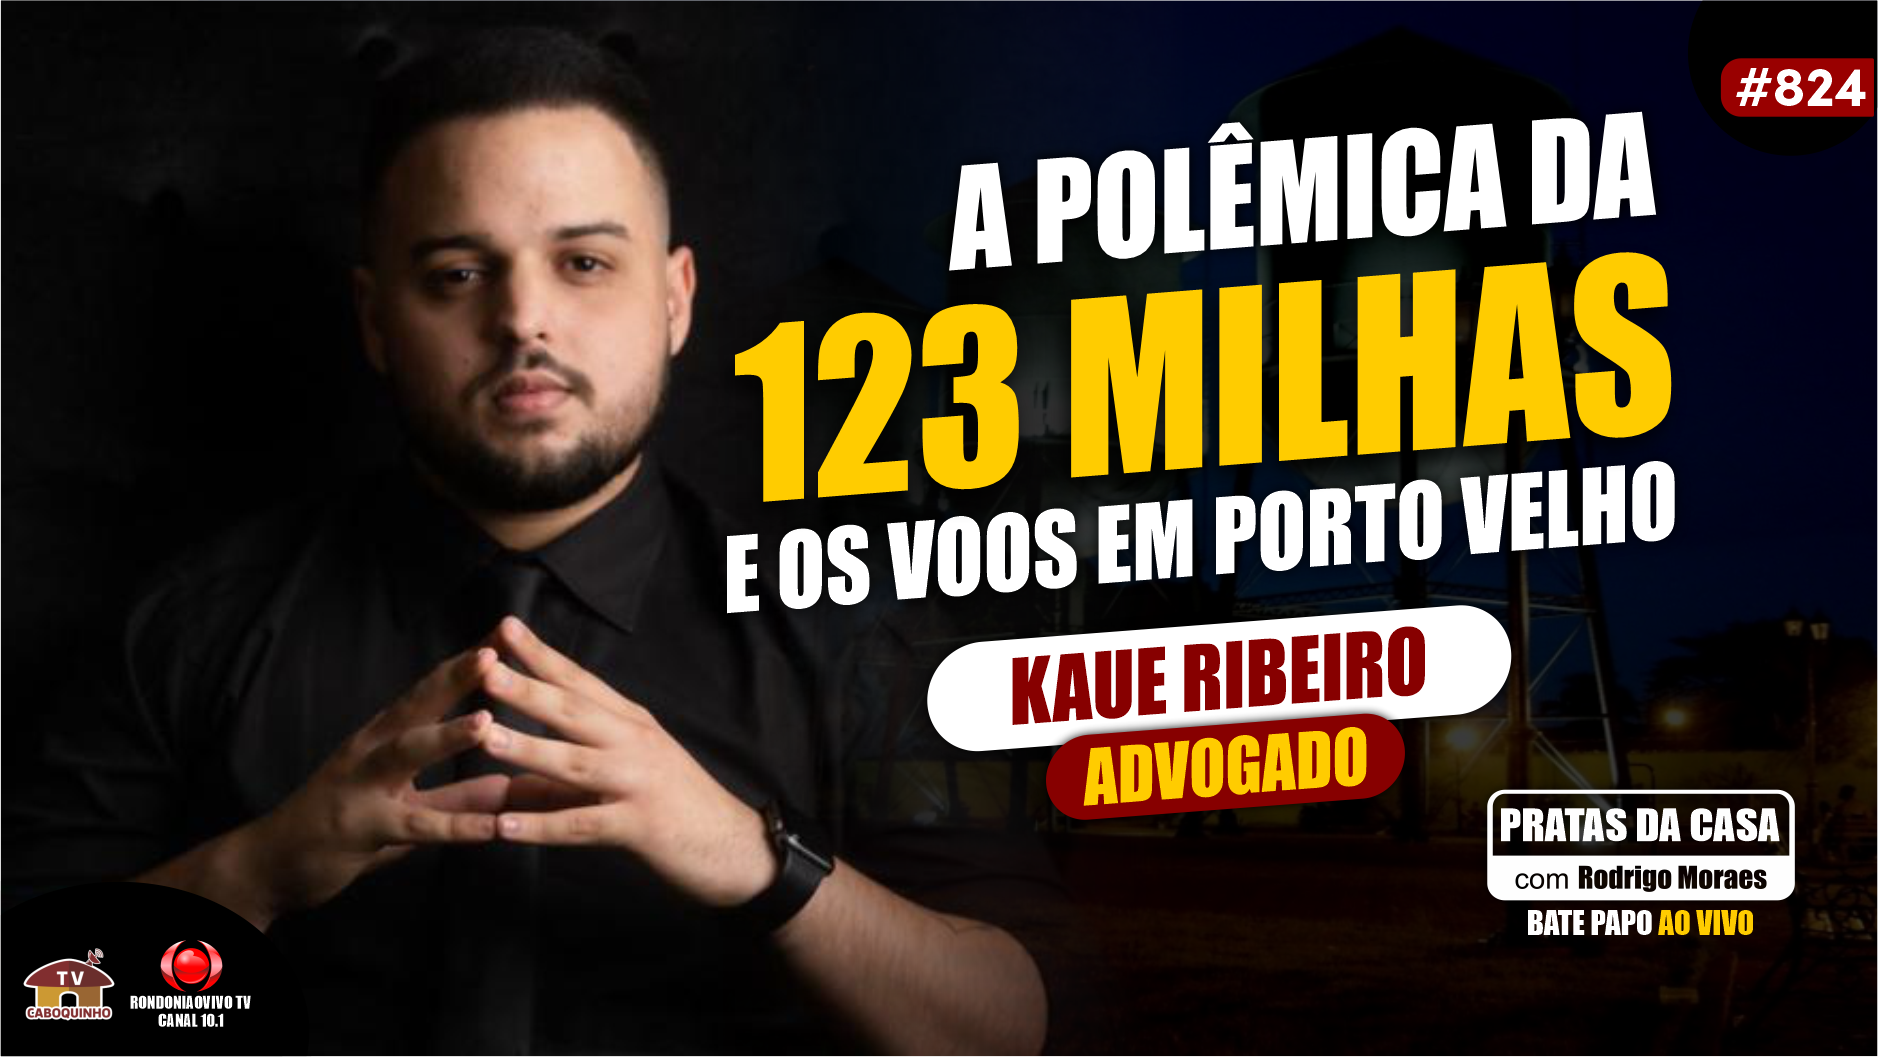 A POLÊMICA DA 123MILHAS E OS VOOS EM PORTO VELHO - KAUE RIBEIRO ADV - #PRATASDACASA #824 #rondonia